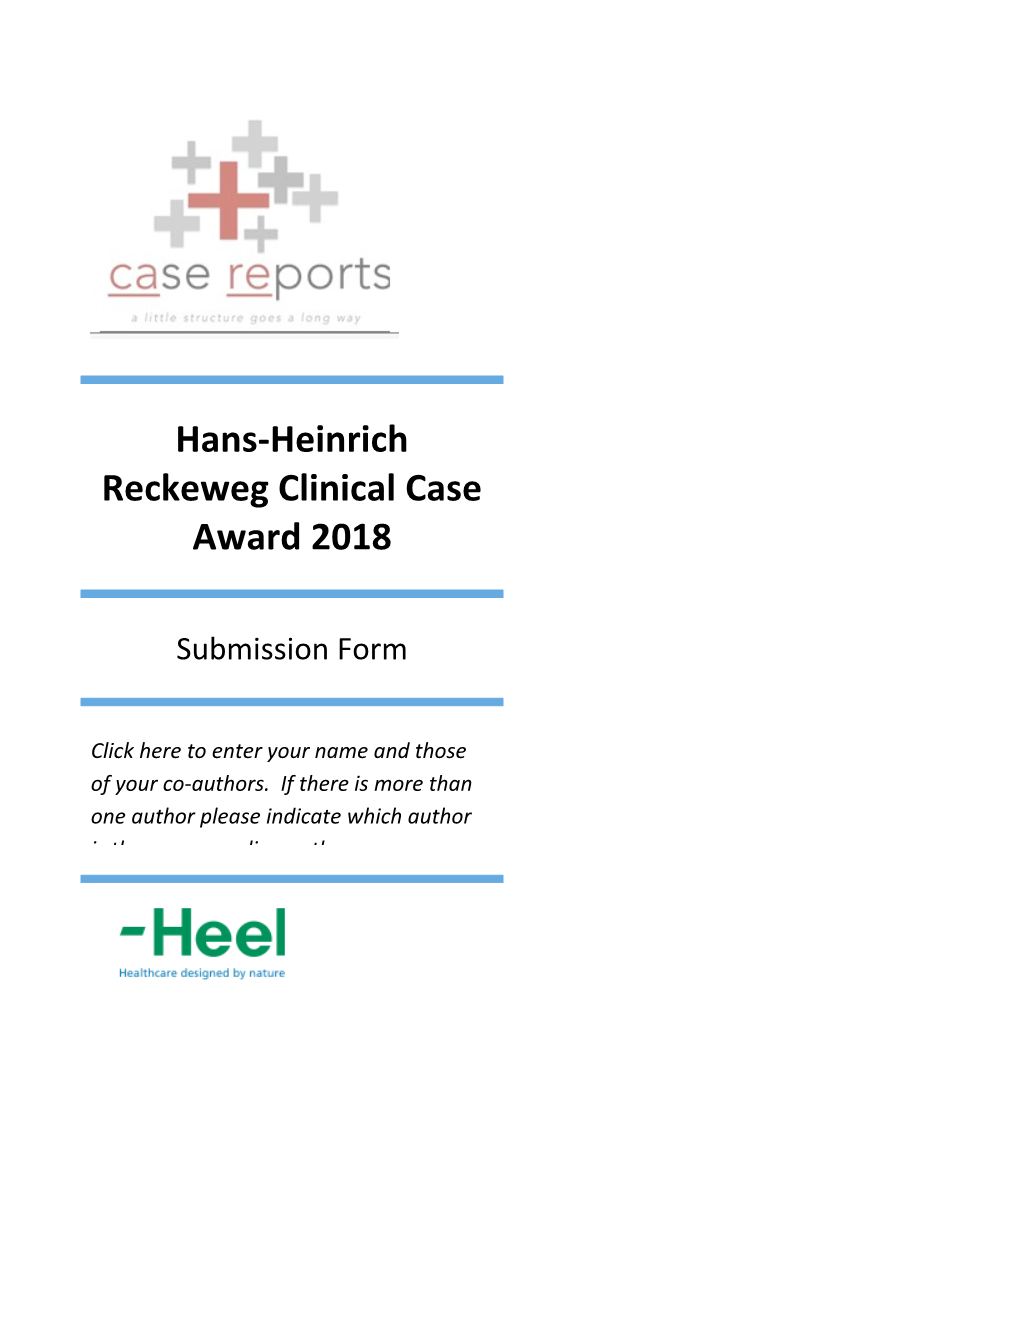 Hans-Heinrich Reckeweg Clinical Case Award 2018